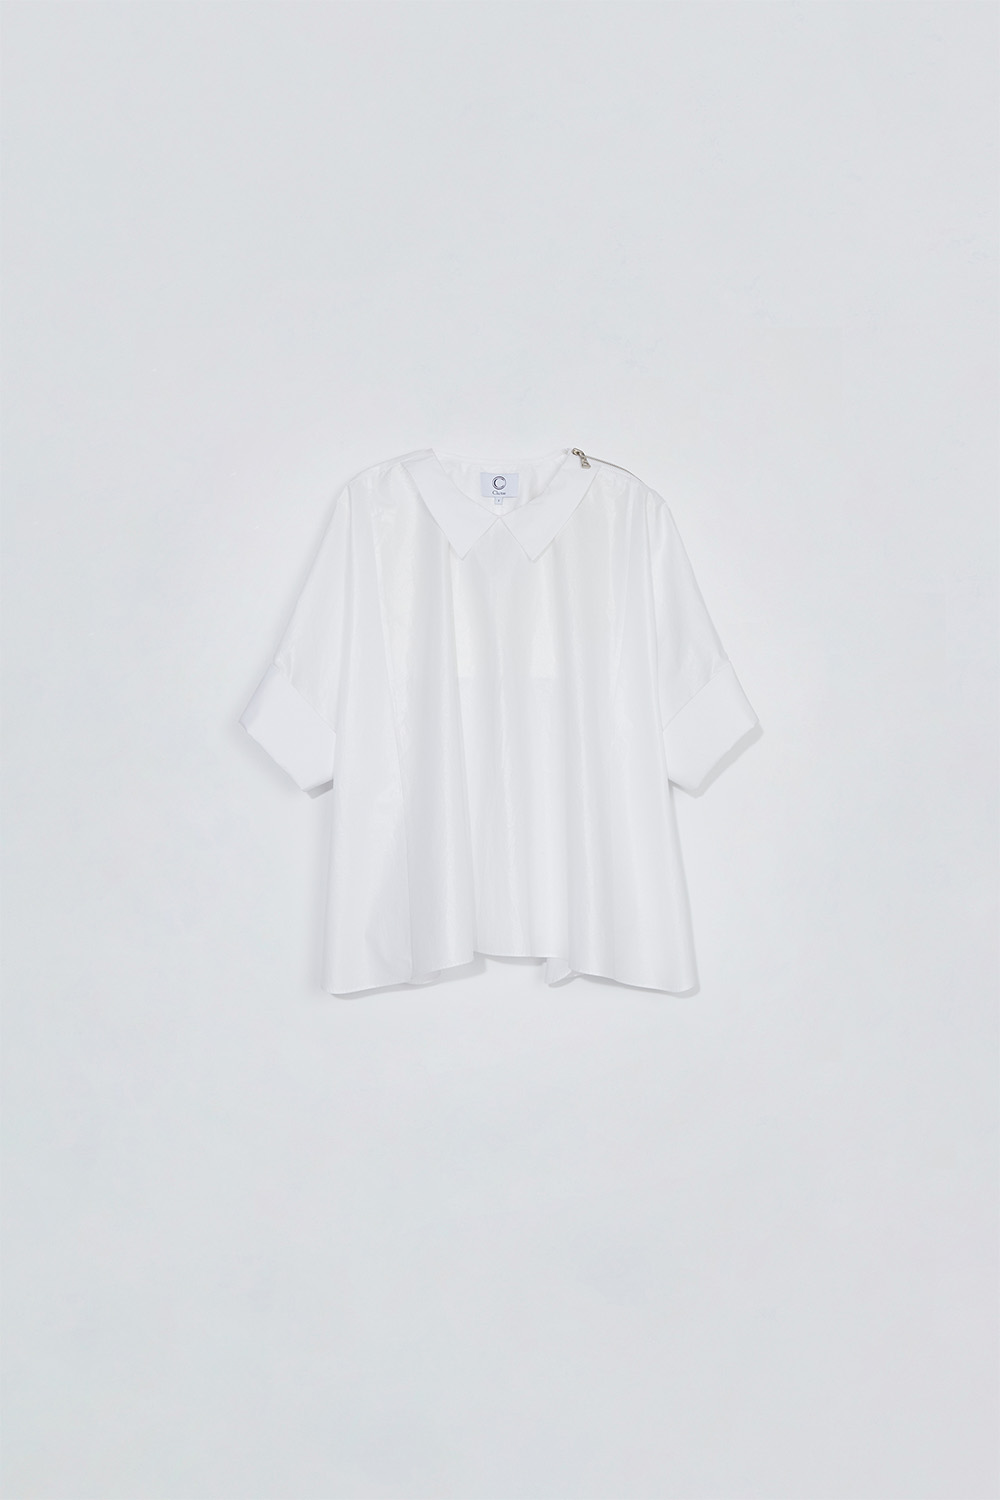 Zipper shirt_white